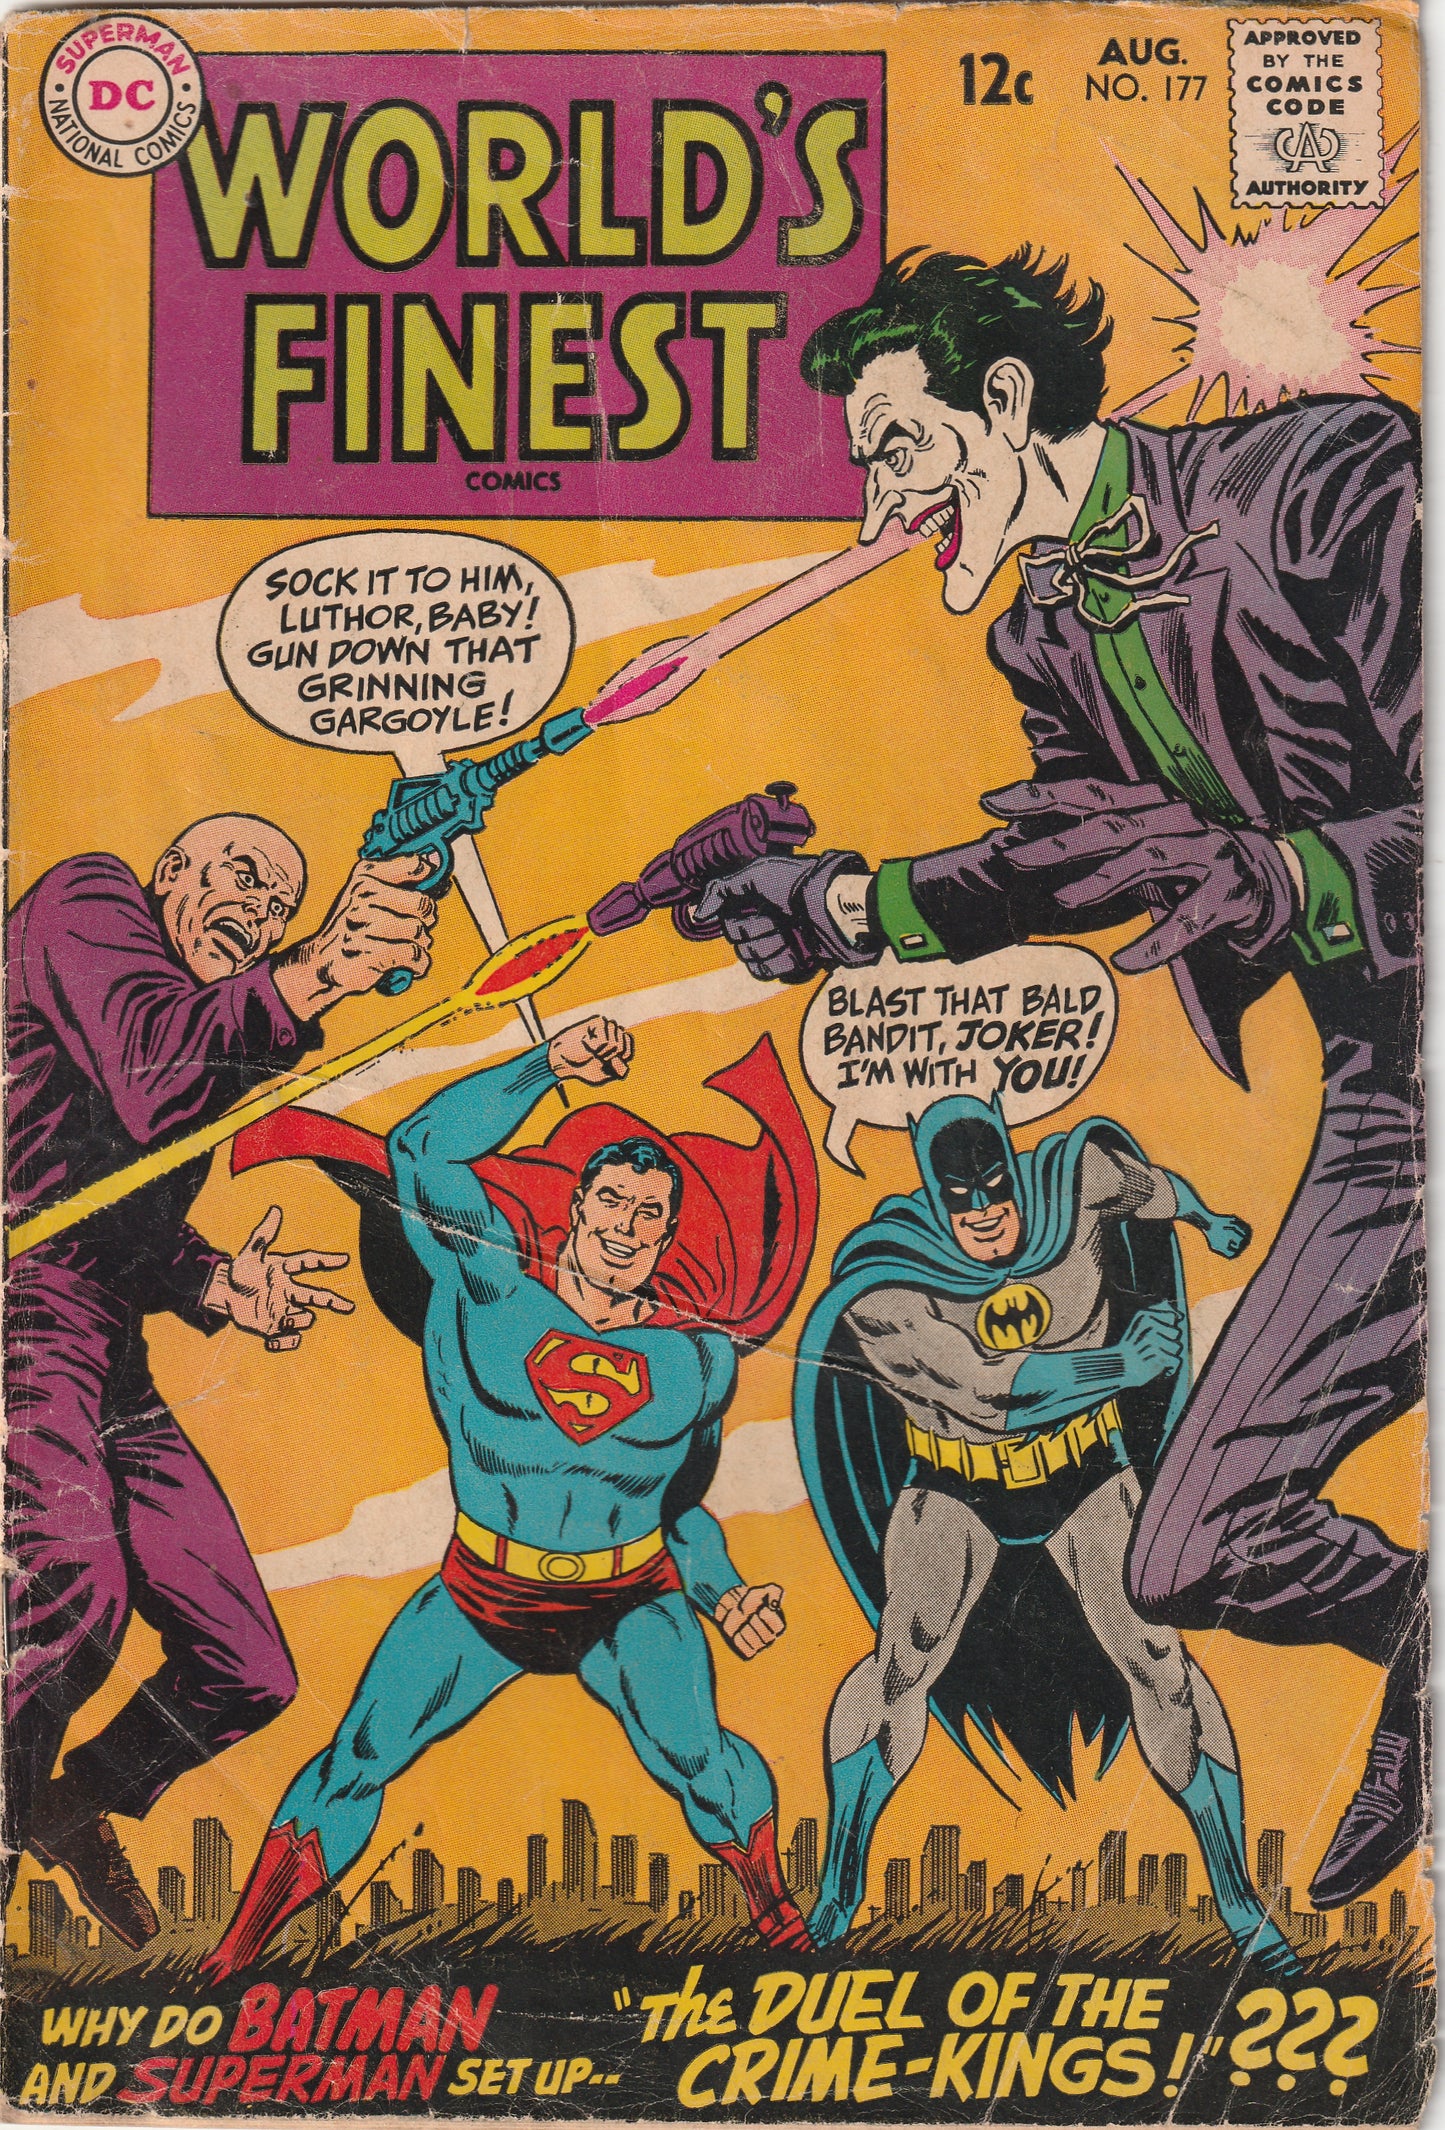 World's Finest #177 (1968) - Joker/Luther team-up